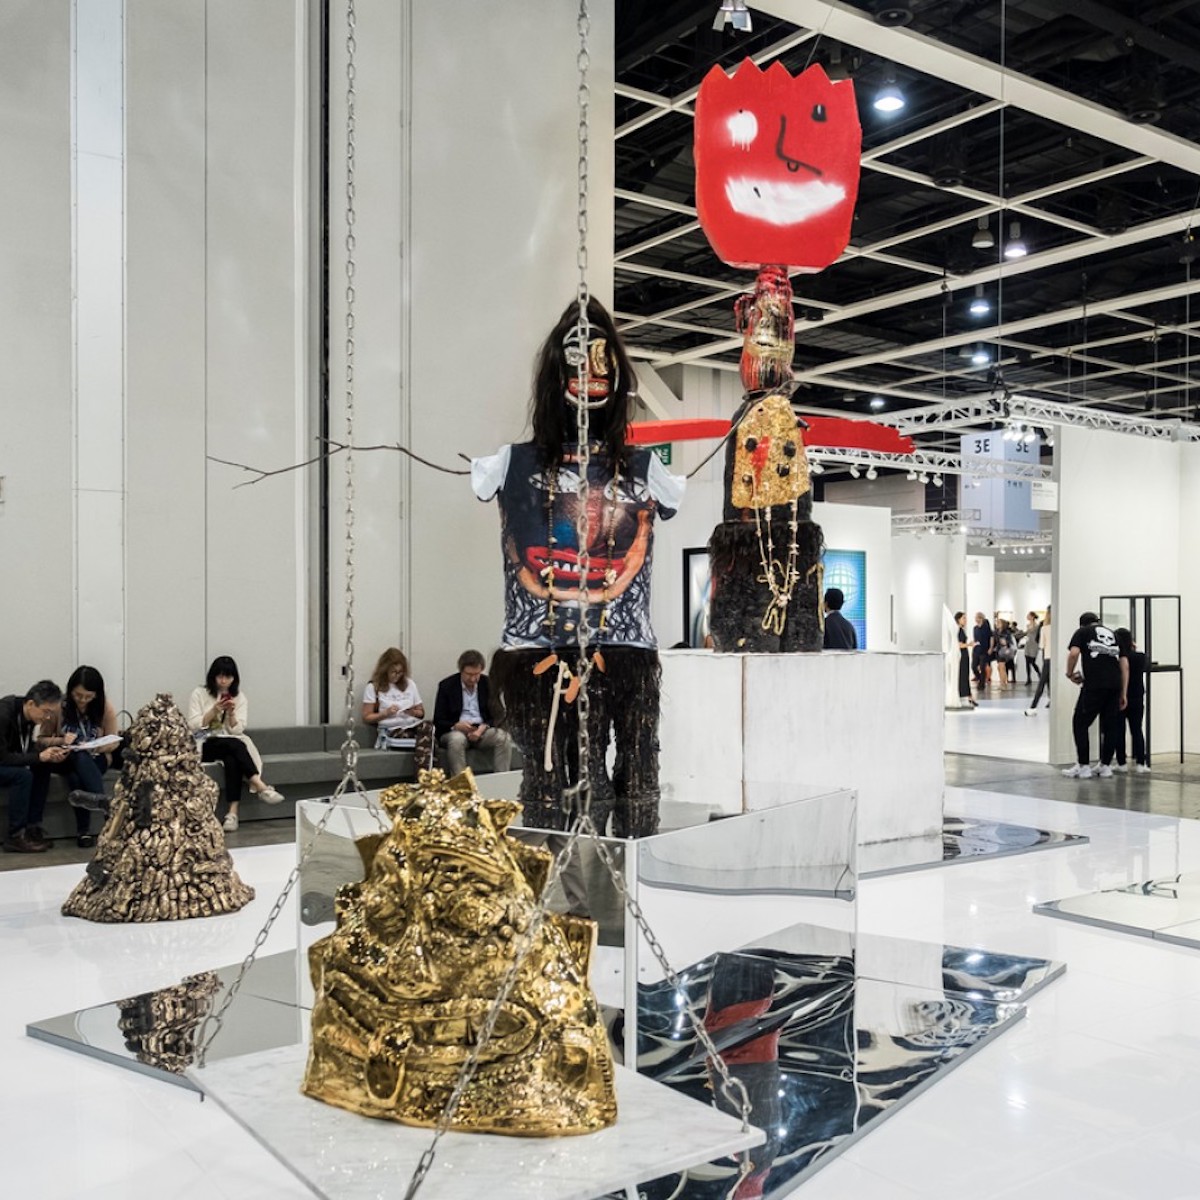 Fashion Exhibits At Art Basel Hong Kong 2019